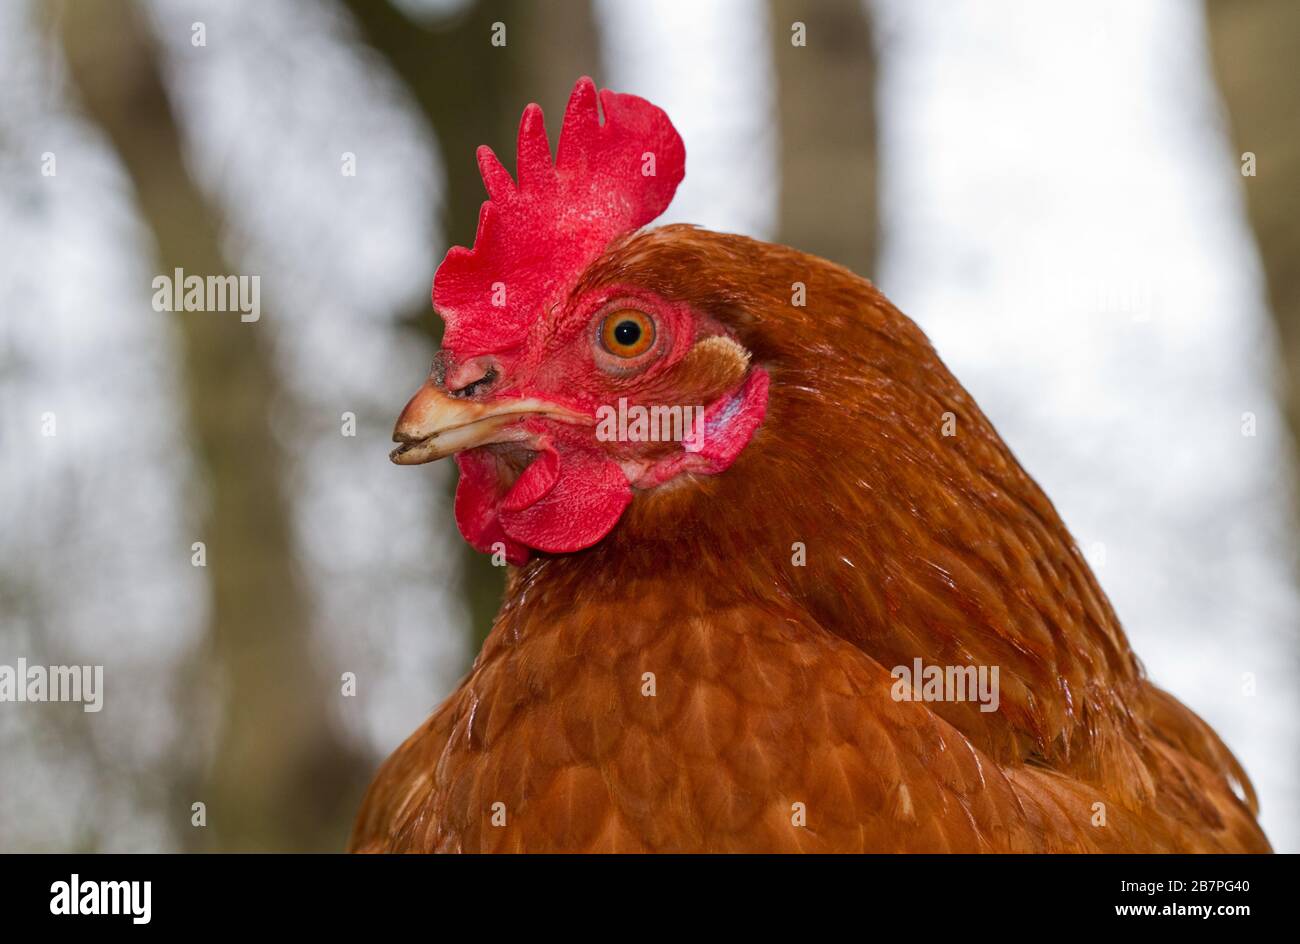 Porträt eines braunen Hühnchens mit rotem Kamm, Wattle und Ohrläppchen und gestutztem Schnabel Stockfoto